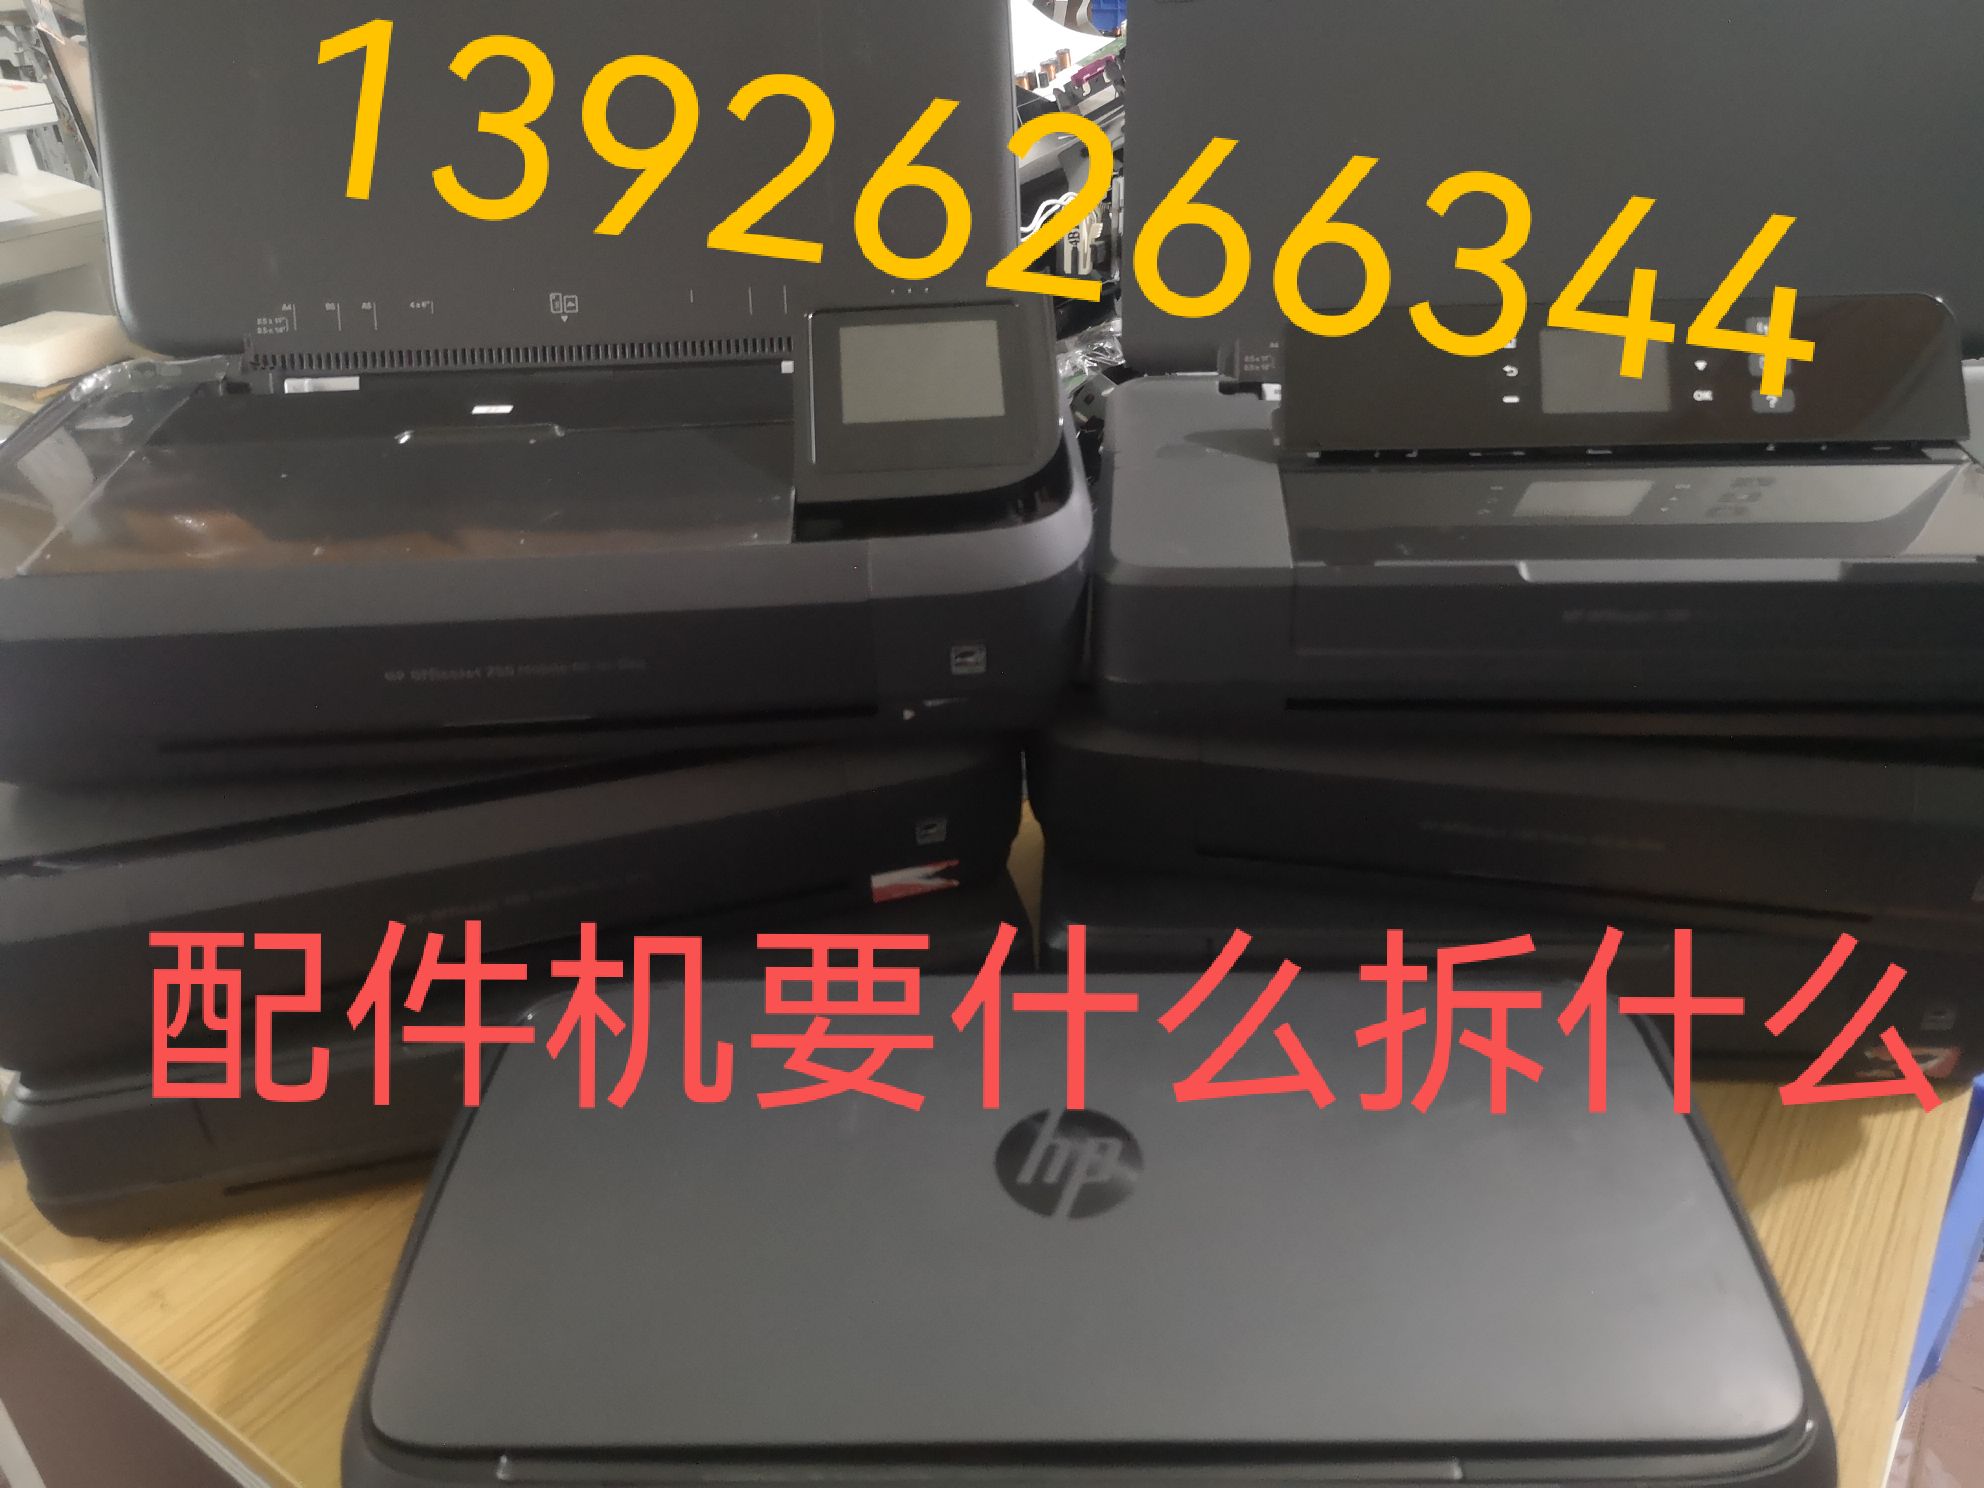 惠普HP OfficeJet200 258便携式打印机 配件进纸器显示屏光珊上盖 办公设备/耗材/相关服务 收纸器/卷纸器 原图主图